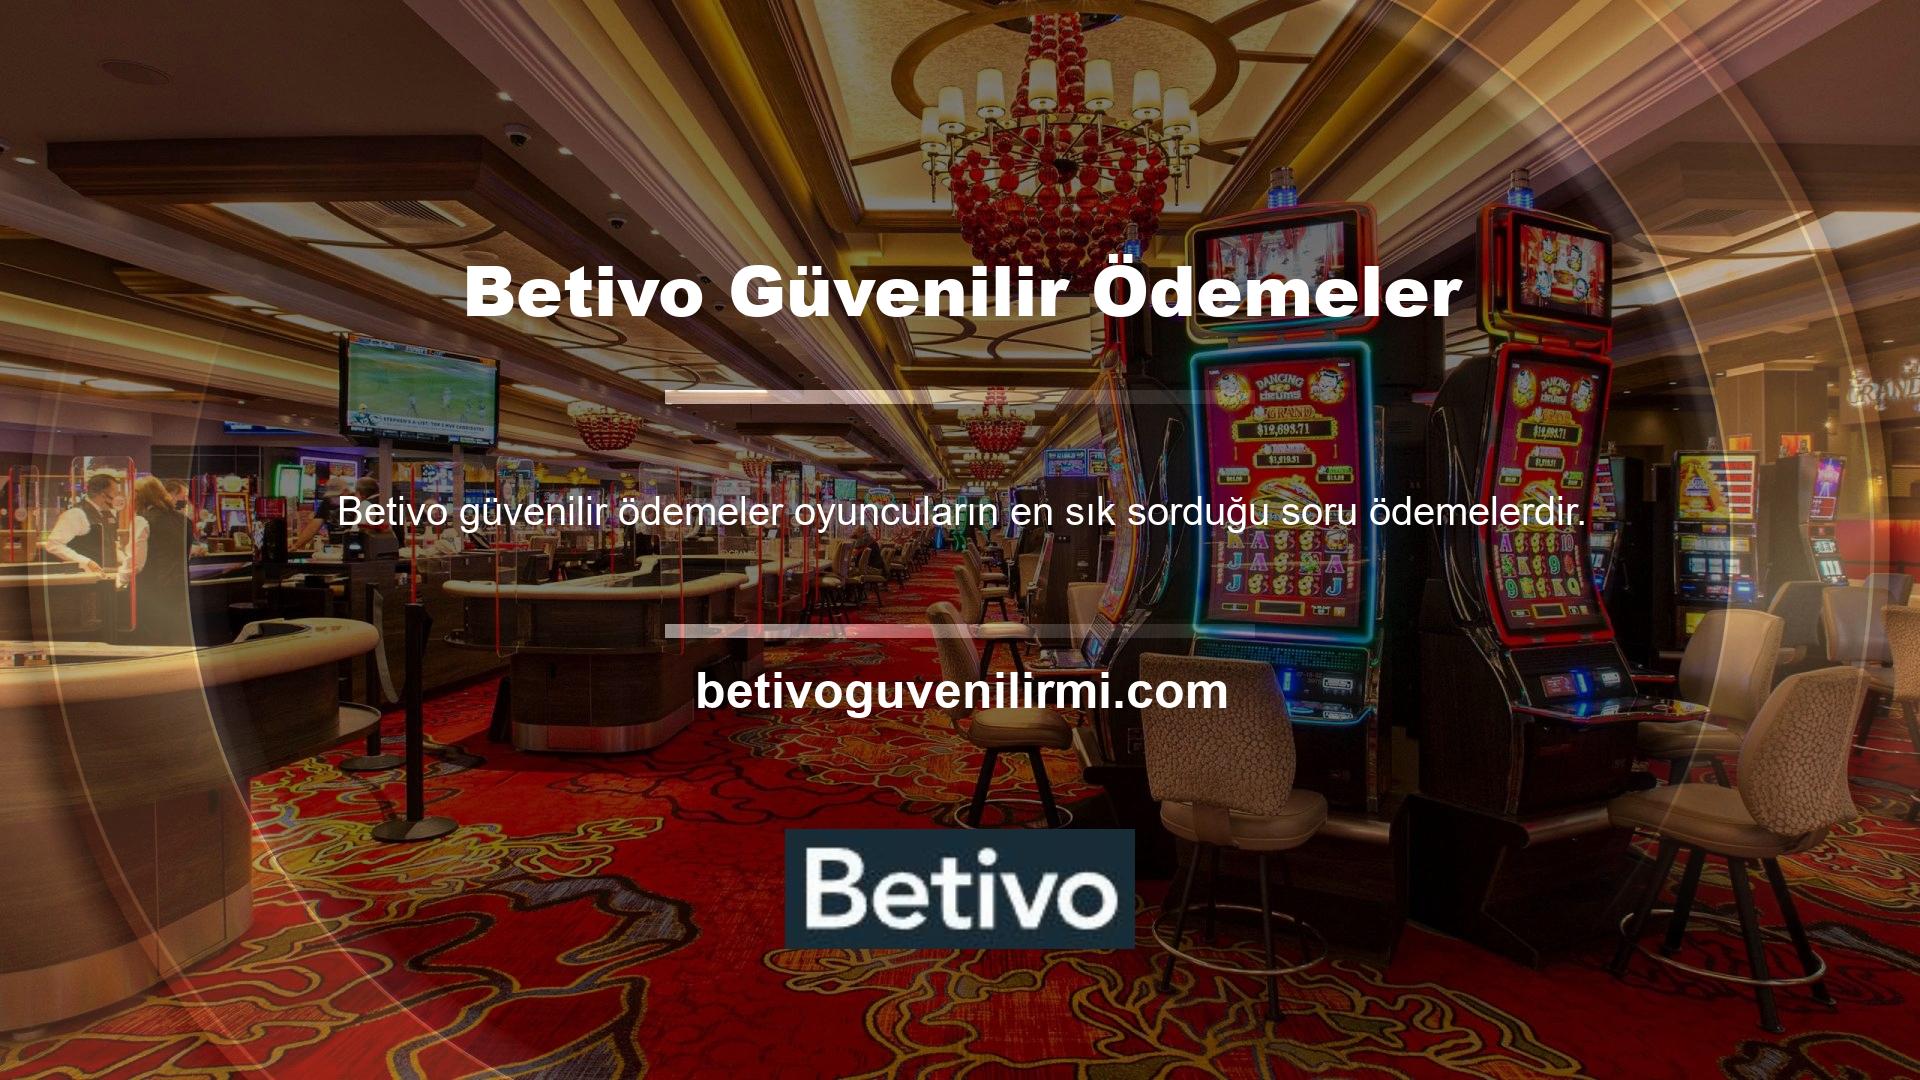 Güvenilir Ödemeler Betivo web sitesi çeşitli ödeme hizmetleri sunmaktadır